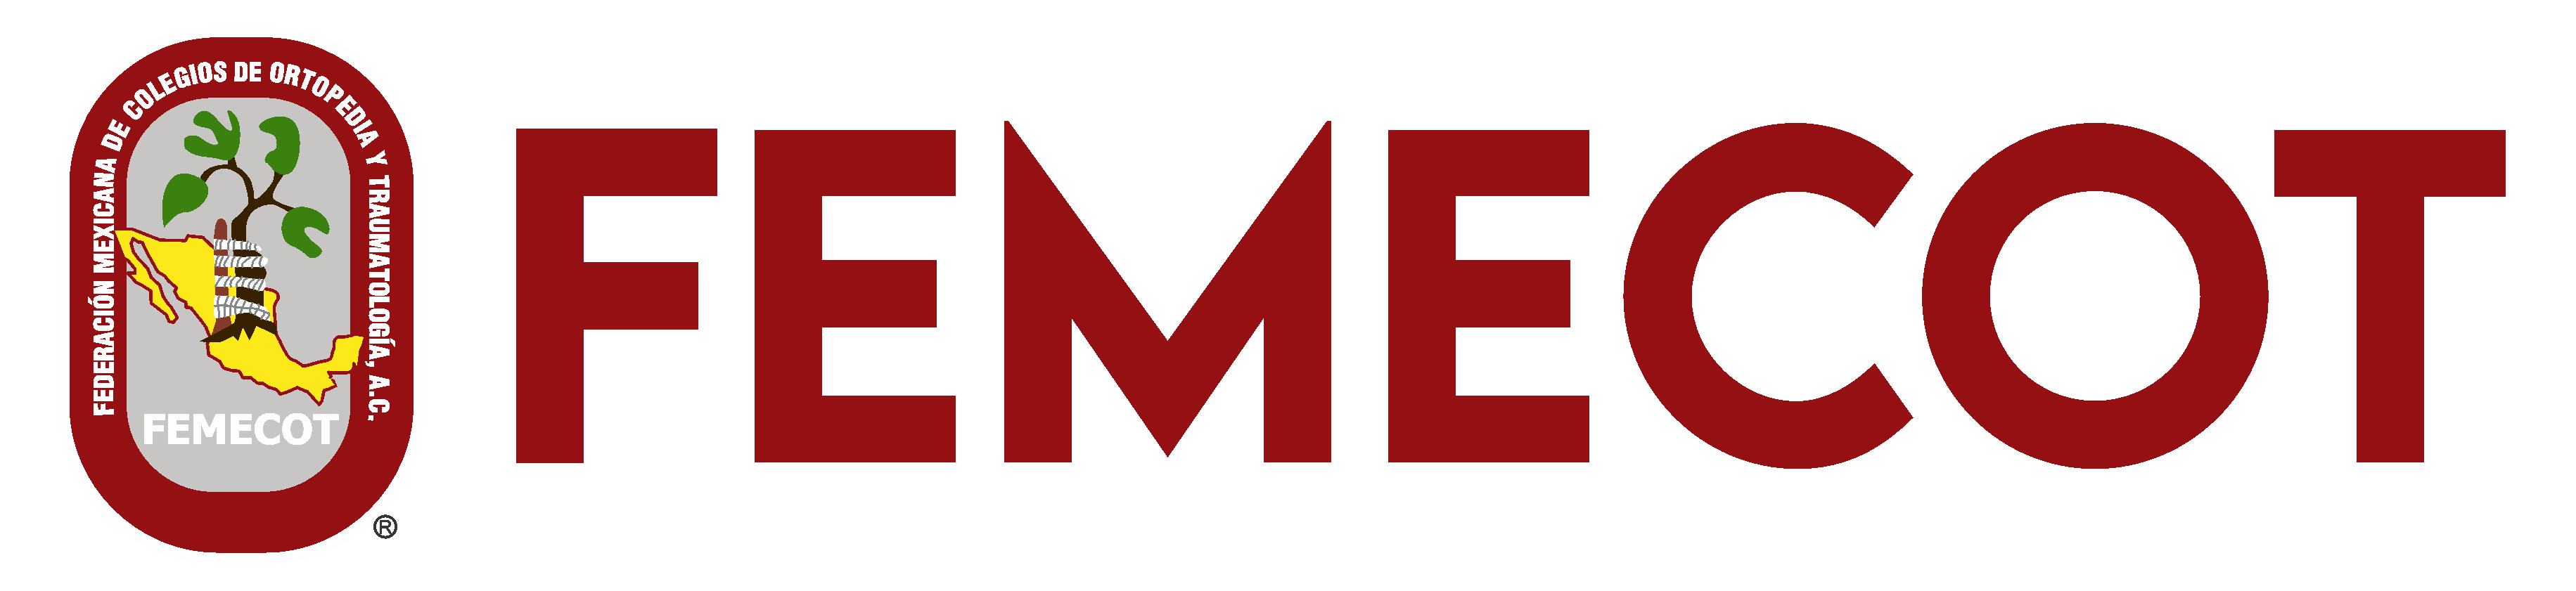 FEMECOT Logo